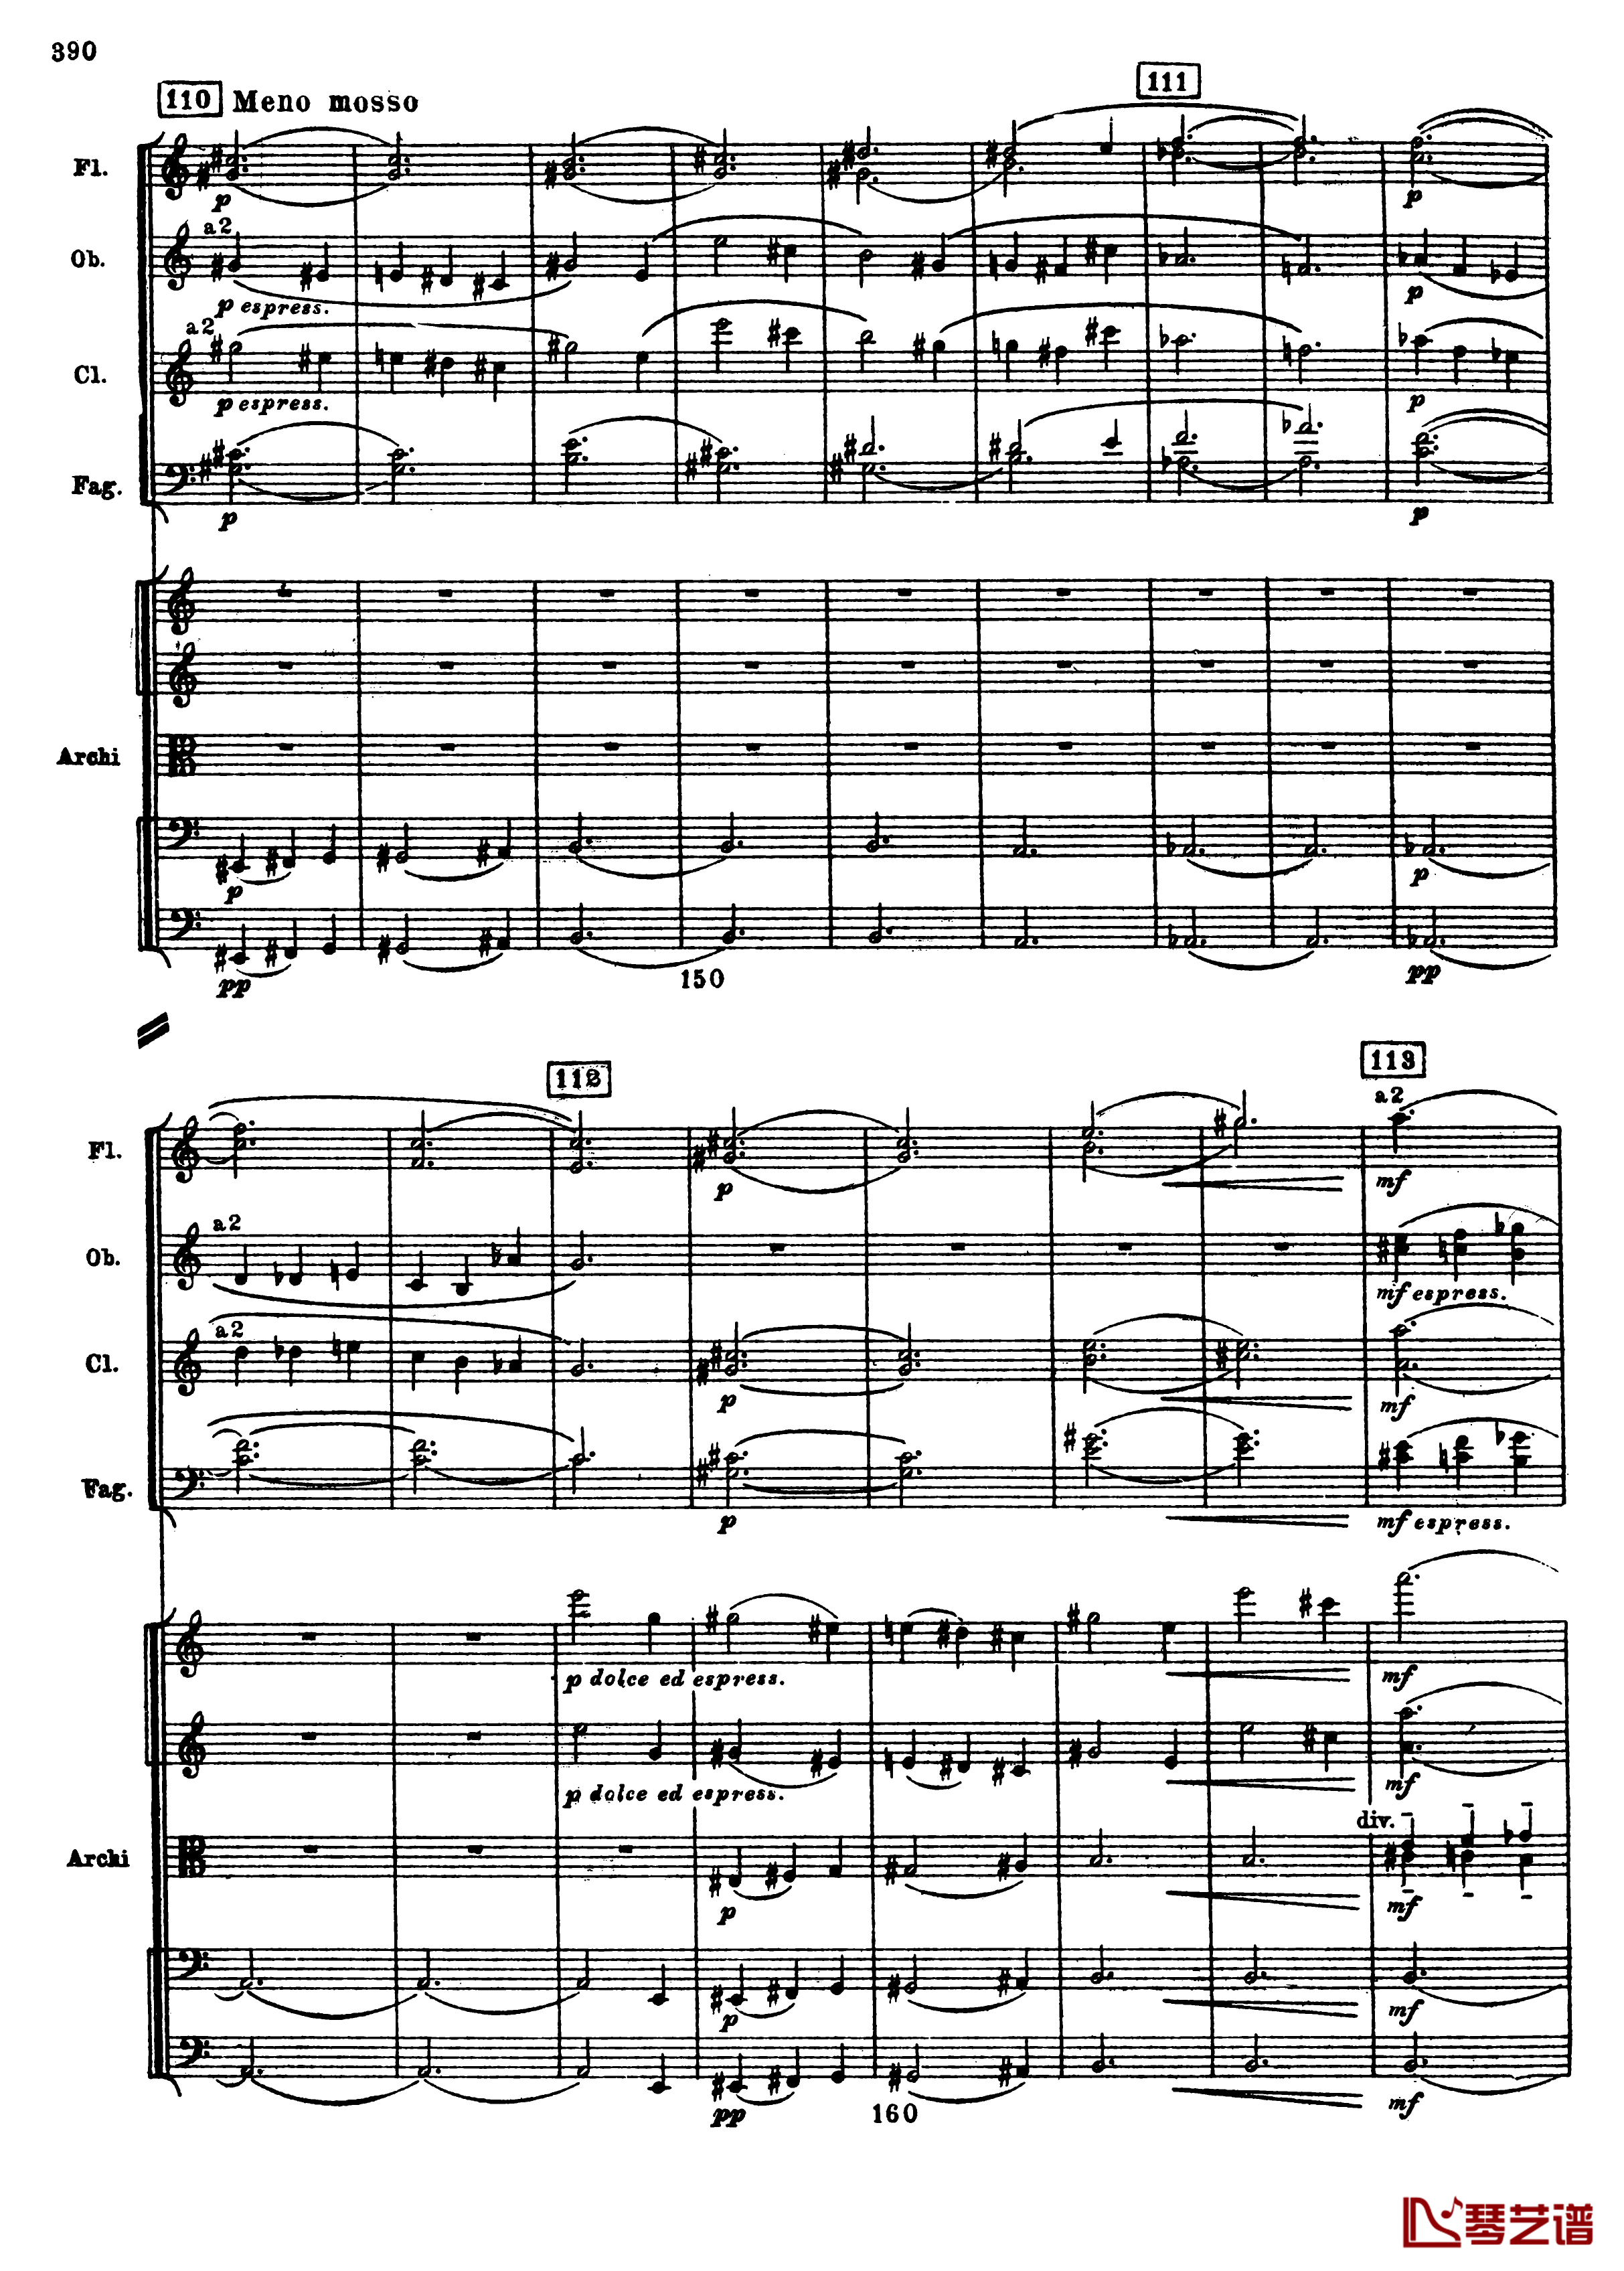 普罗科菲耶夫第三钢琴协奏曲钢琴谱-总谱-普罗科非耶夫122